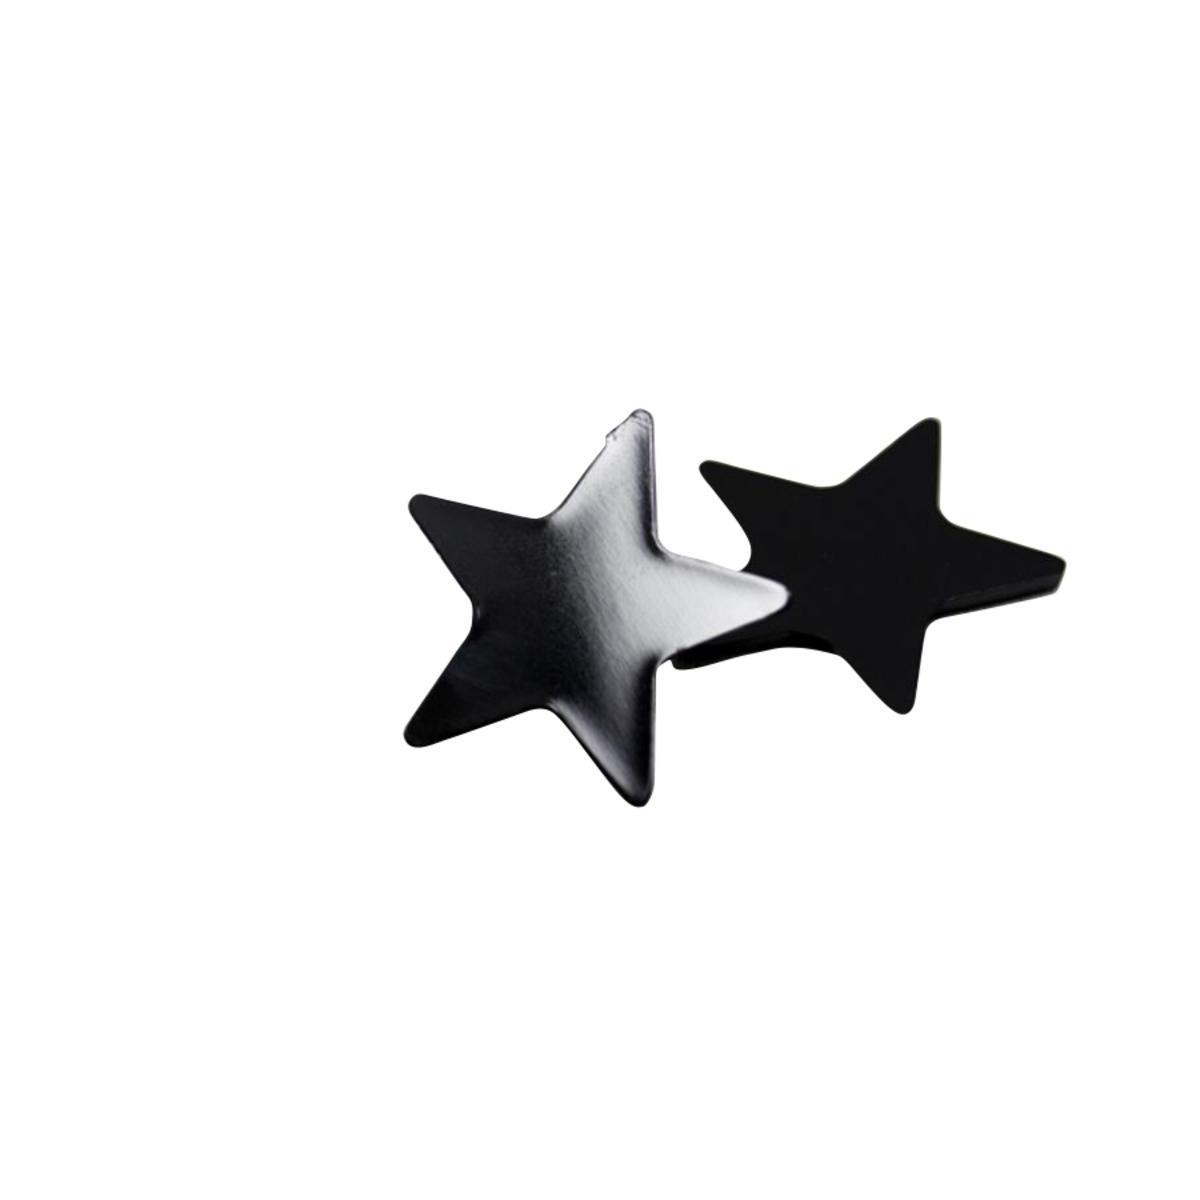 Lot de 10 étoiles miroir - Acrylique - 3x3cm - Noir